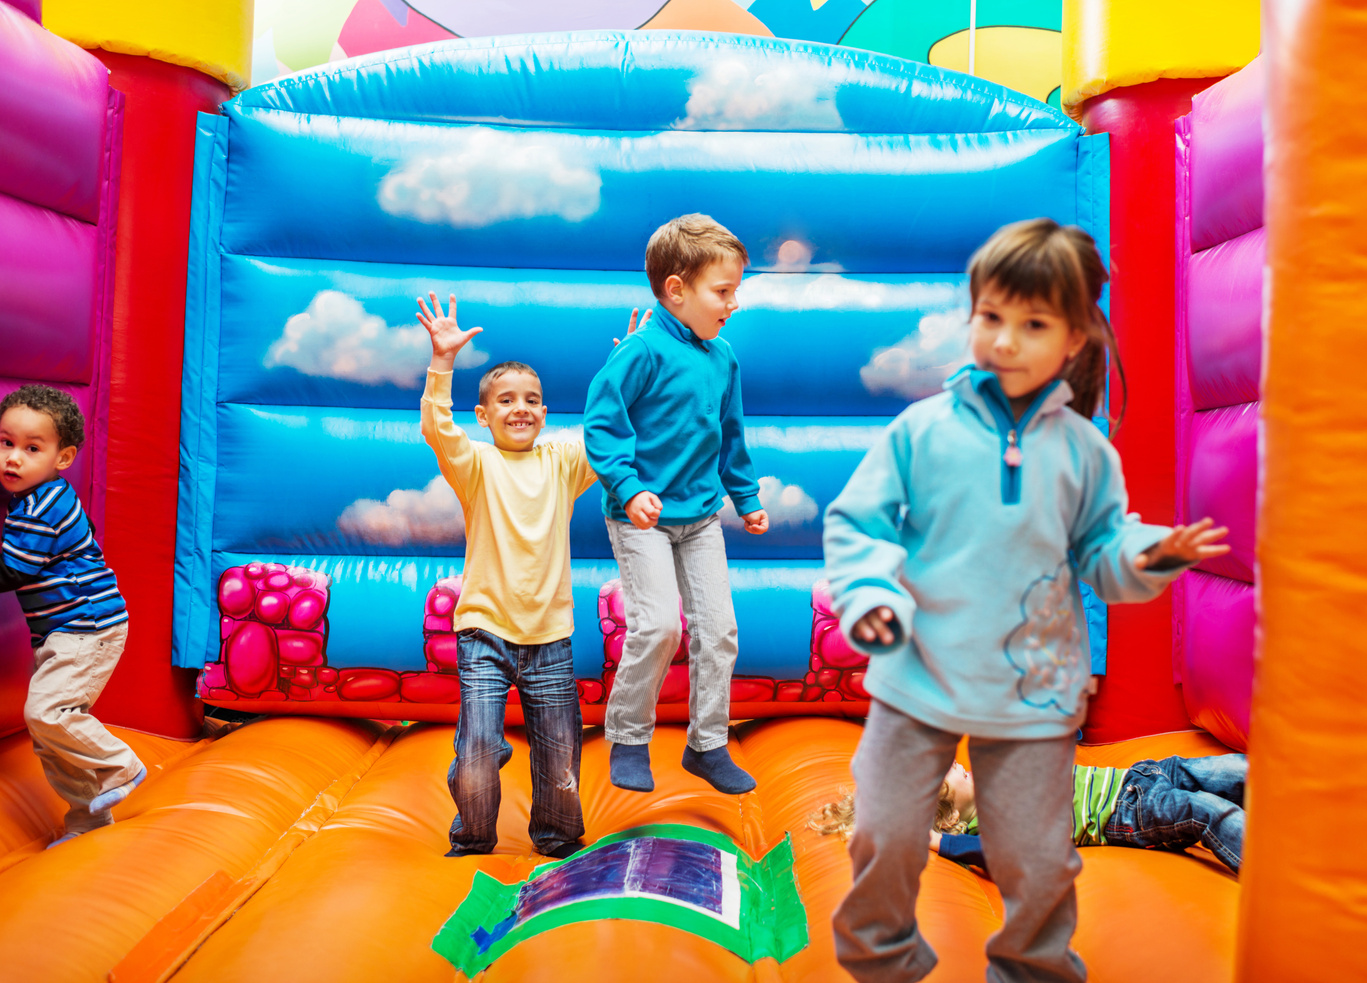 Kids enjoying in bouncy castle.